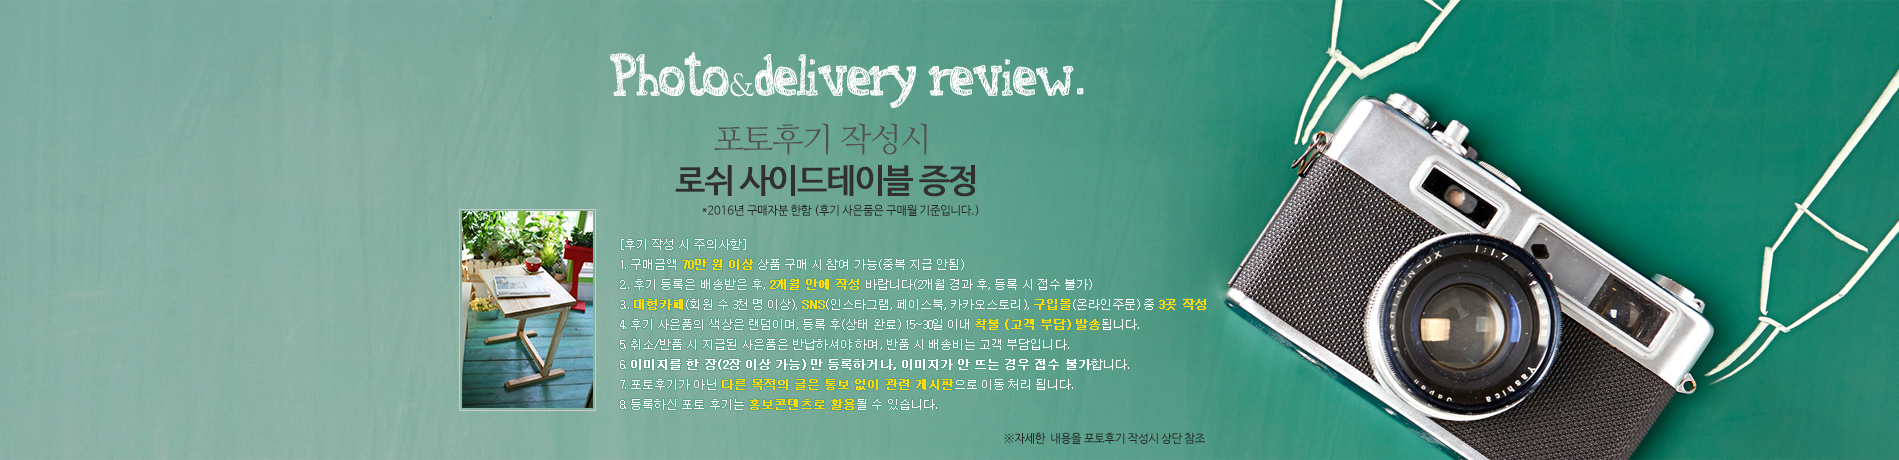 Photo&delivery review. 구매고객 사용후기와 배송설치 후기 입니다